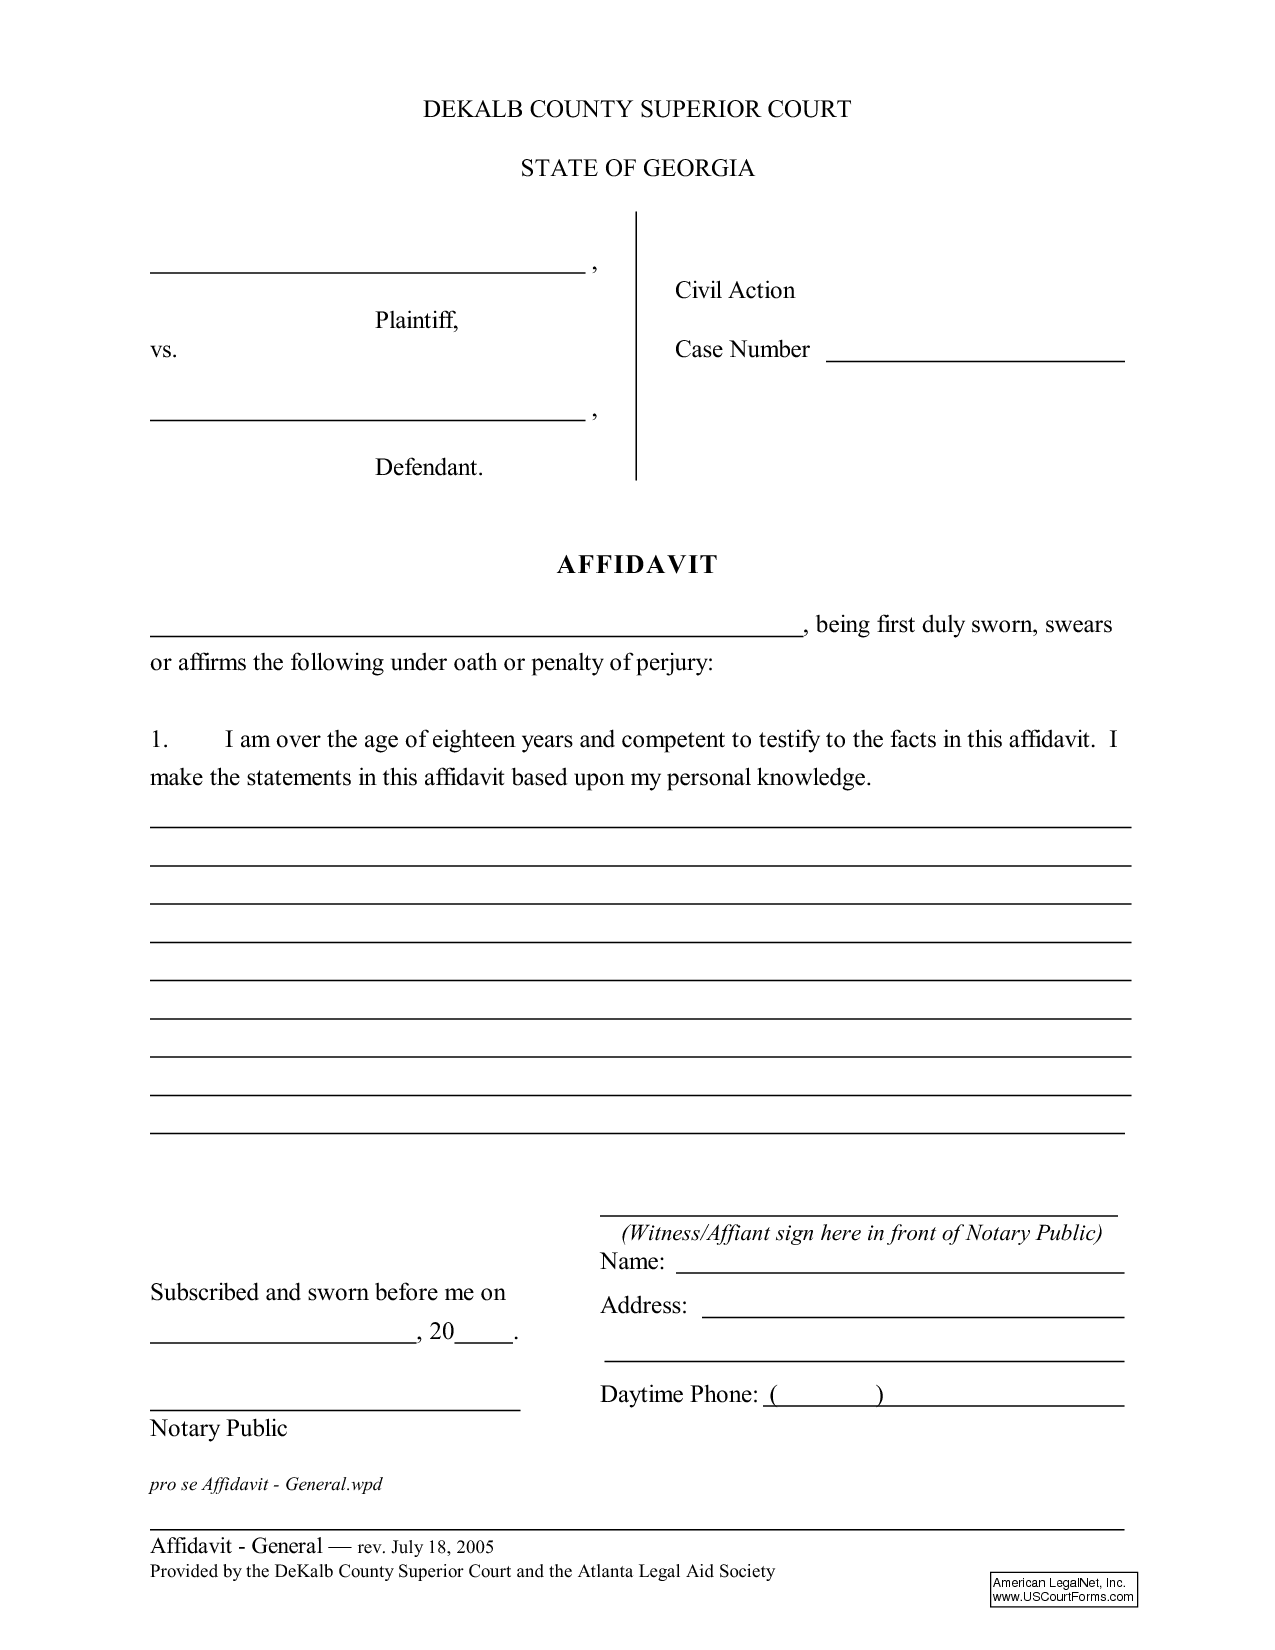 general-affidavit-printable-form-printable-forms-free-online